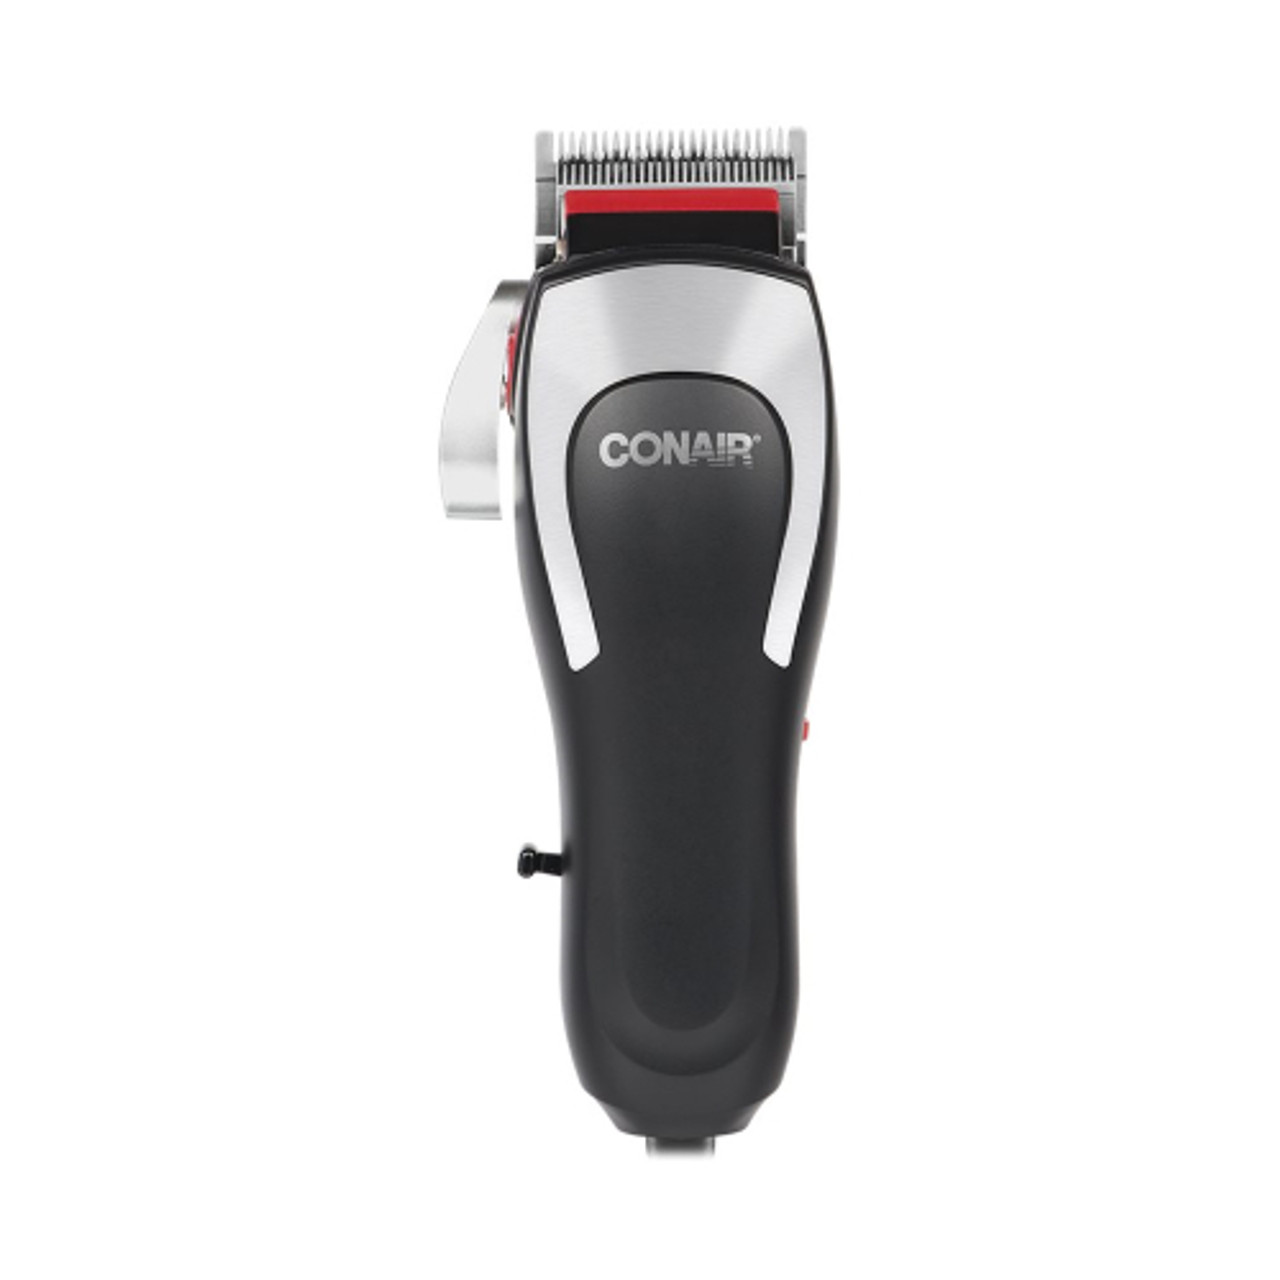 Conair - Barbershop Series Hair Trimmer - Black/Gray/Red